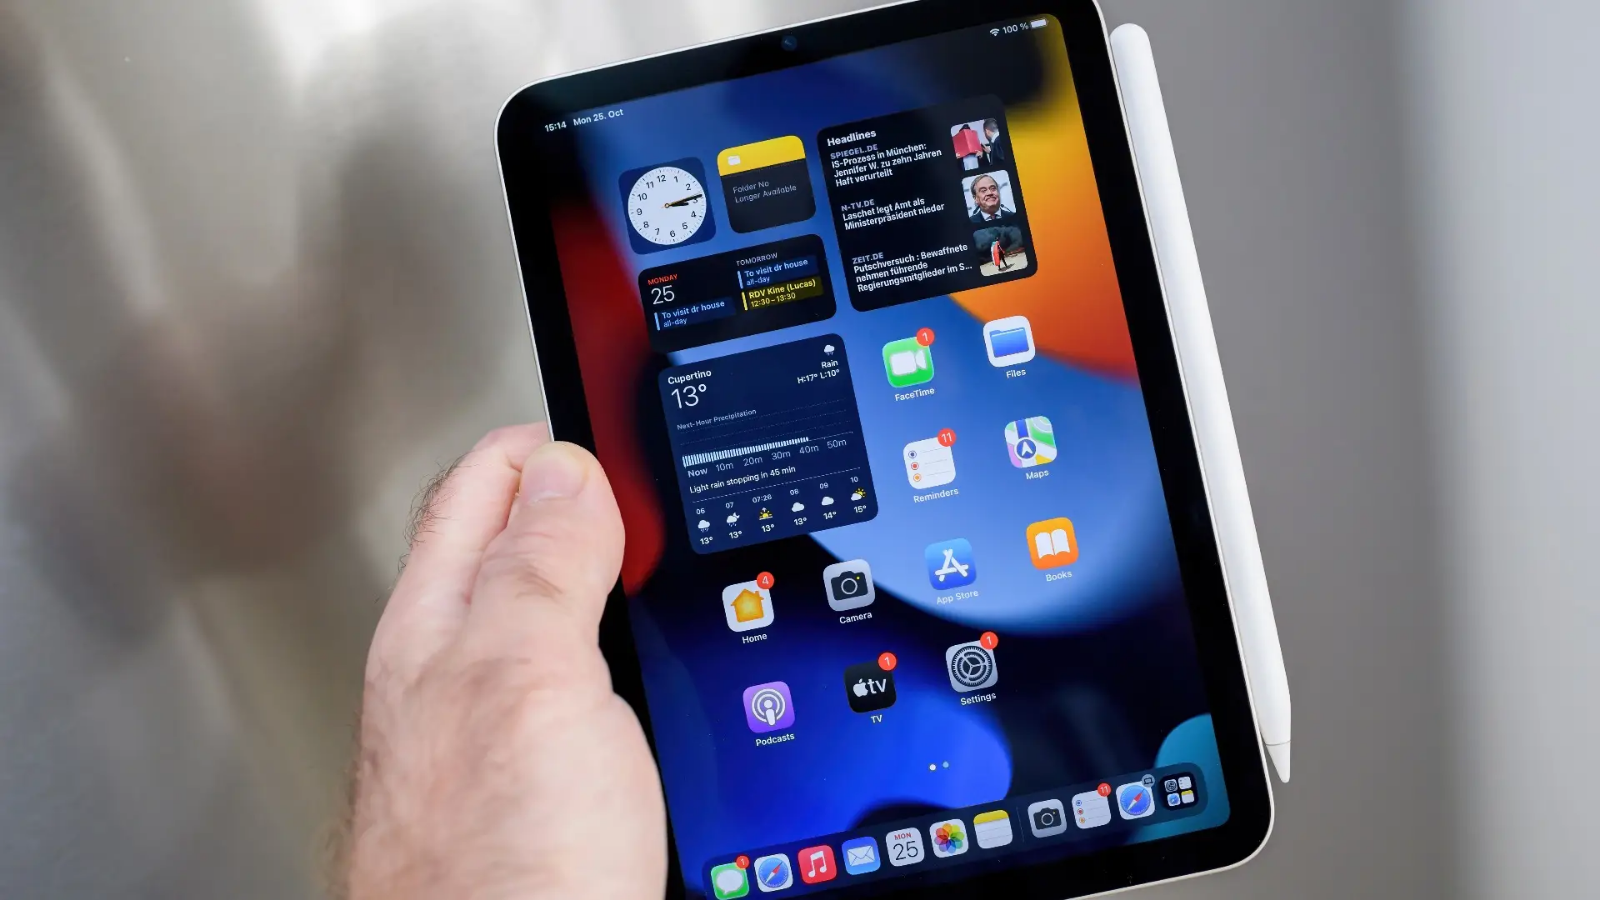 Rò rỉ hình ảnh iPad Pro 129 đời mới sẽ ra mắt vào cuối năm